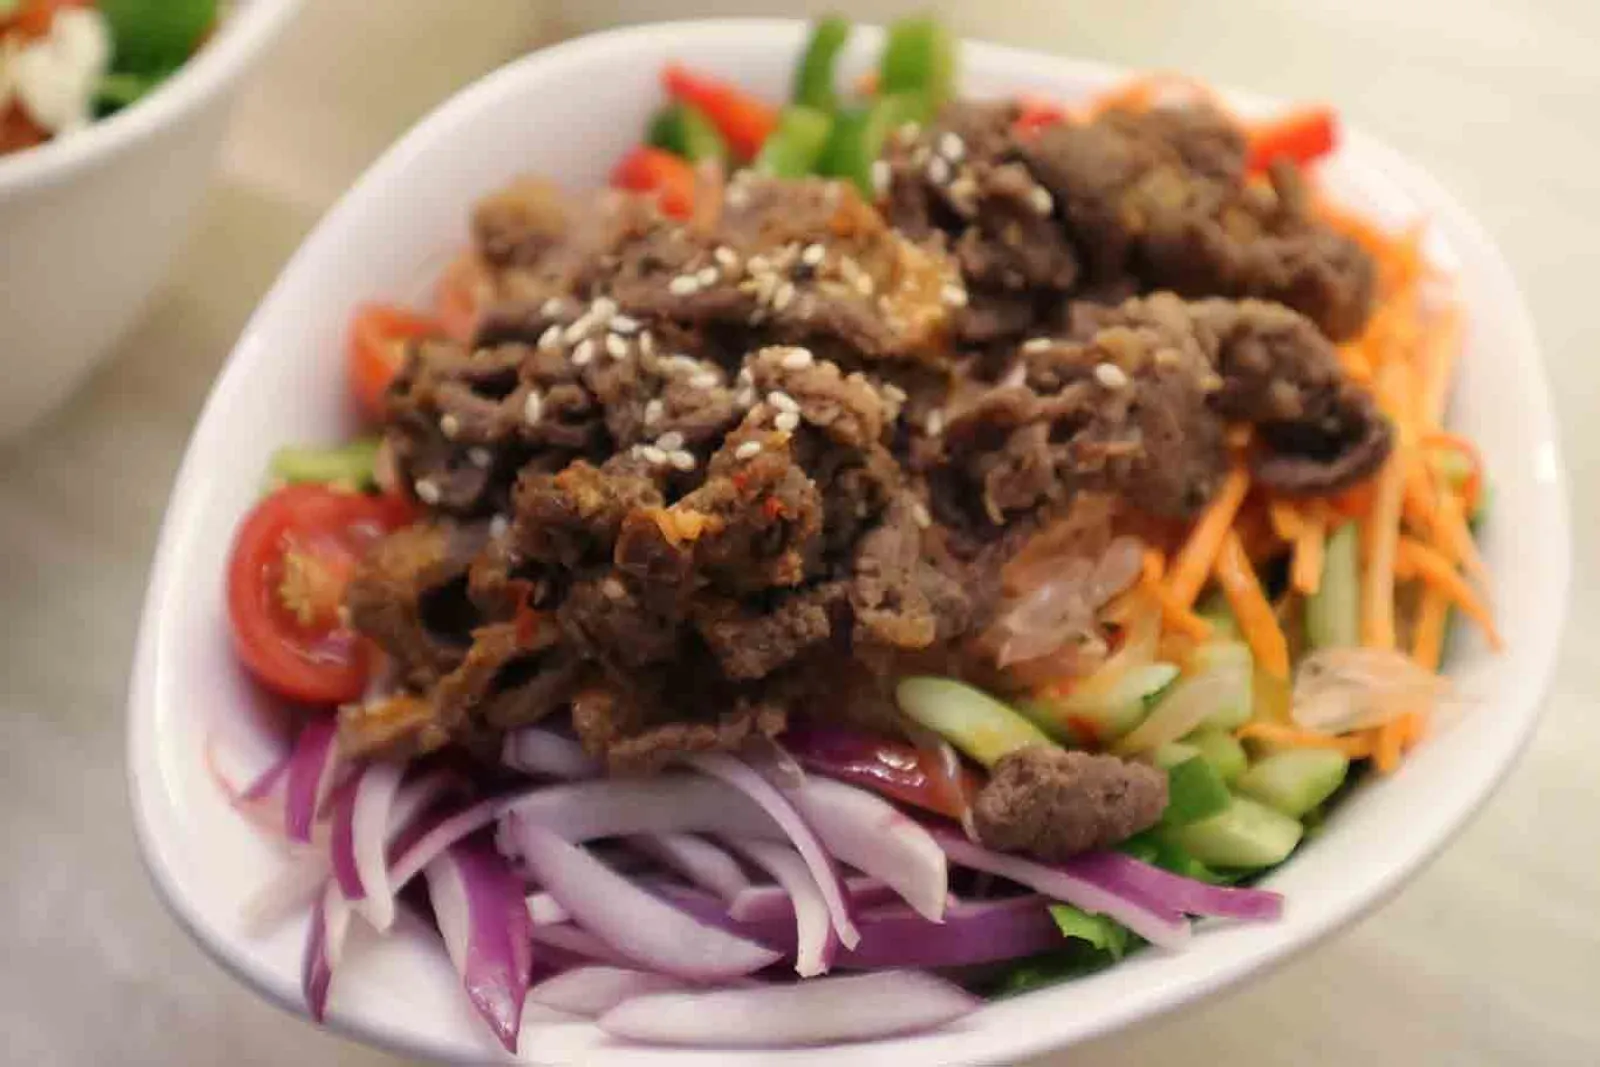 SaladStop! Sajikan Salad Bercita Rasa a la Kuliner dari Tiga Negara 